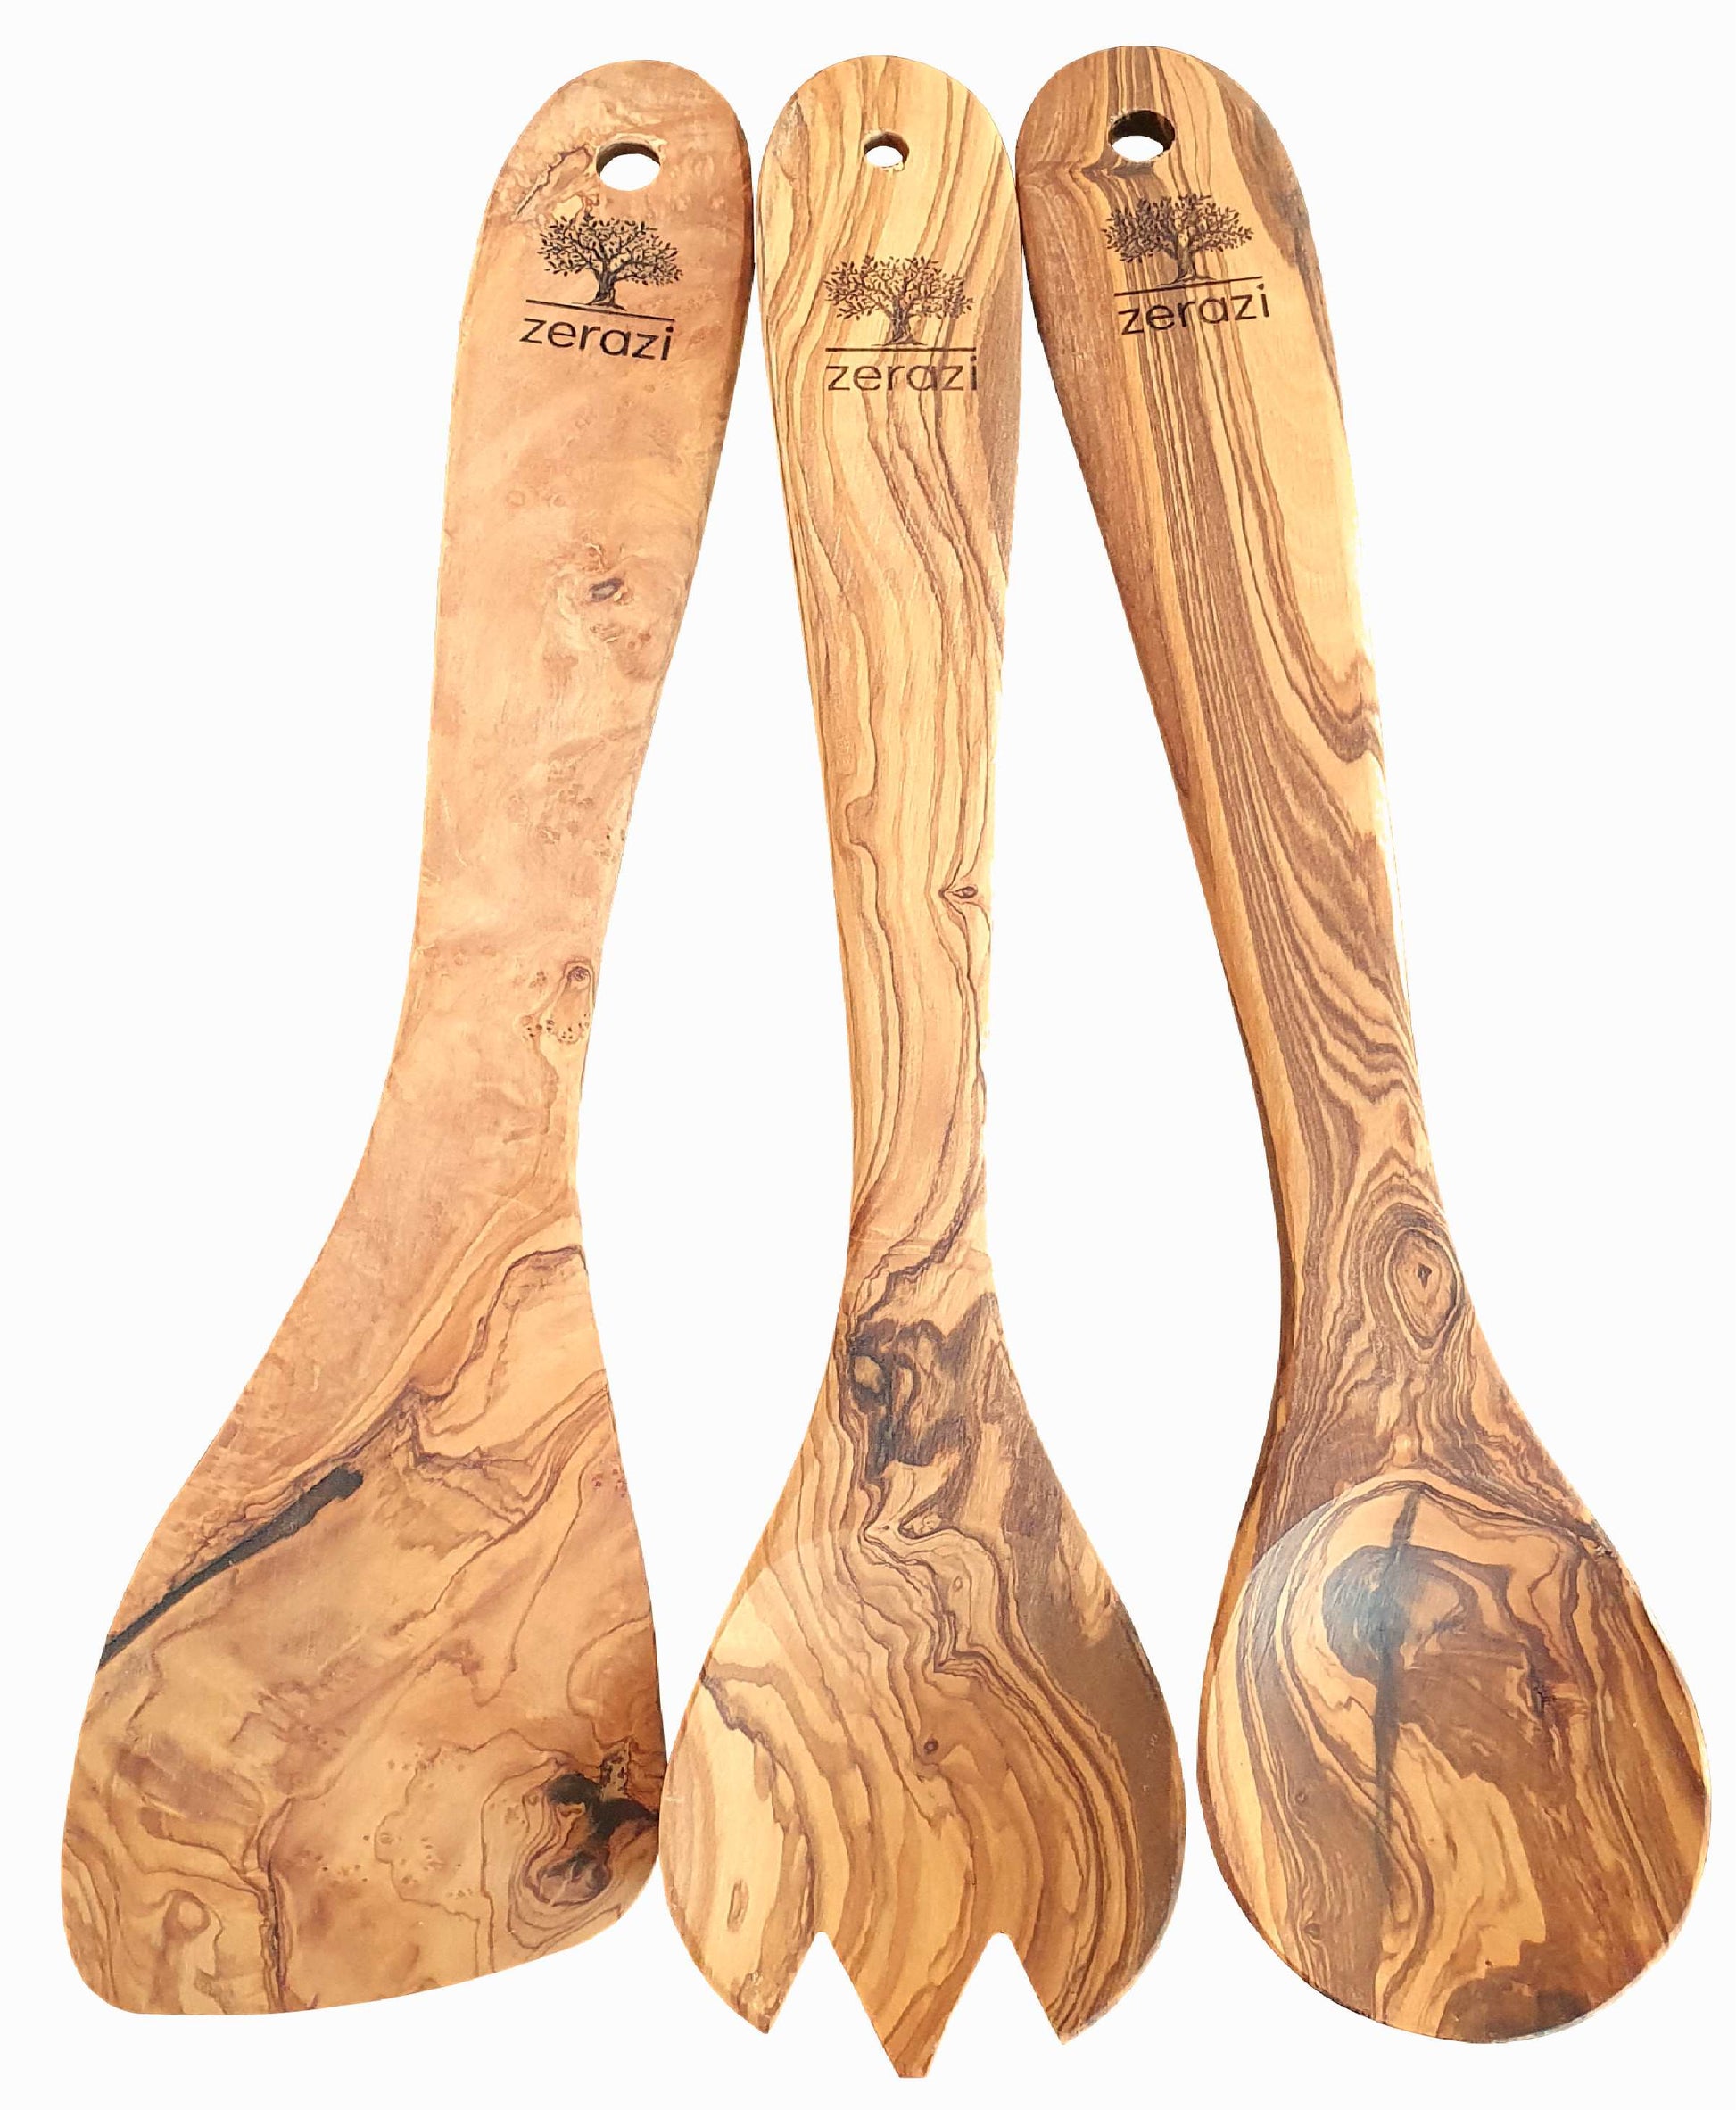 Juego de utensilios de cocina de madera, cucharas de madera para cocinar,  cucharas de madera de teca zhangmengya LED